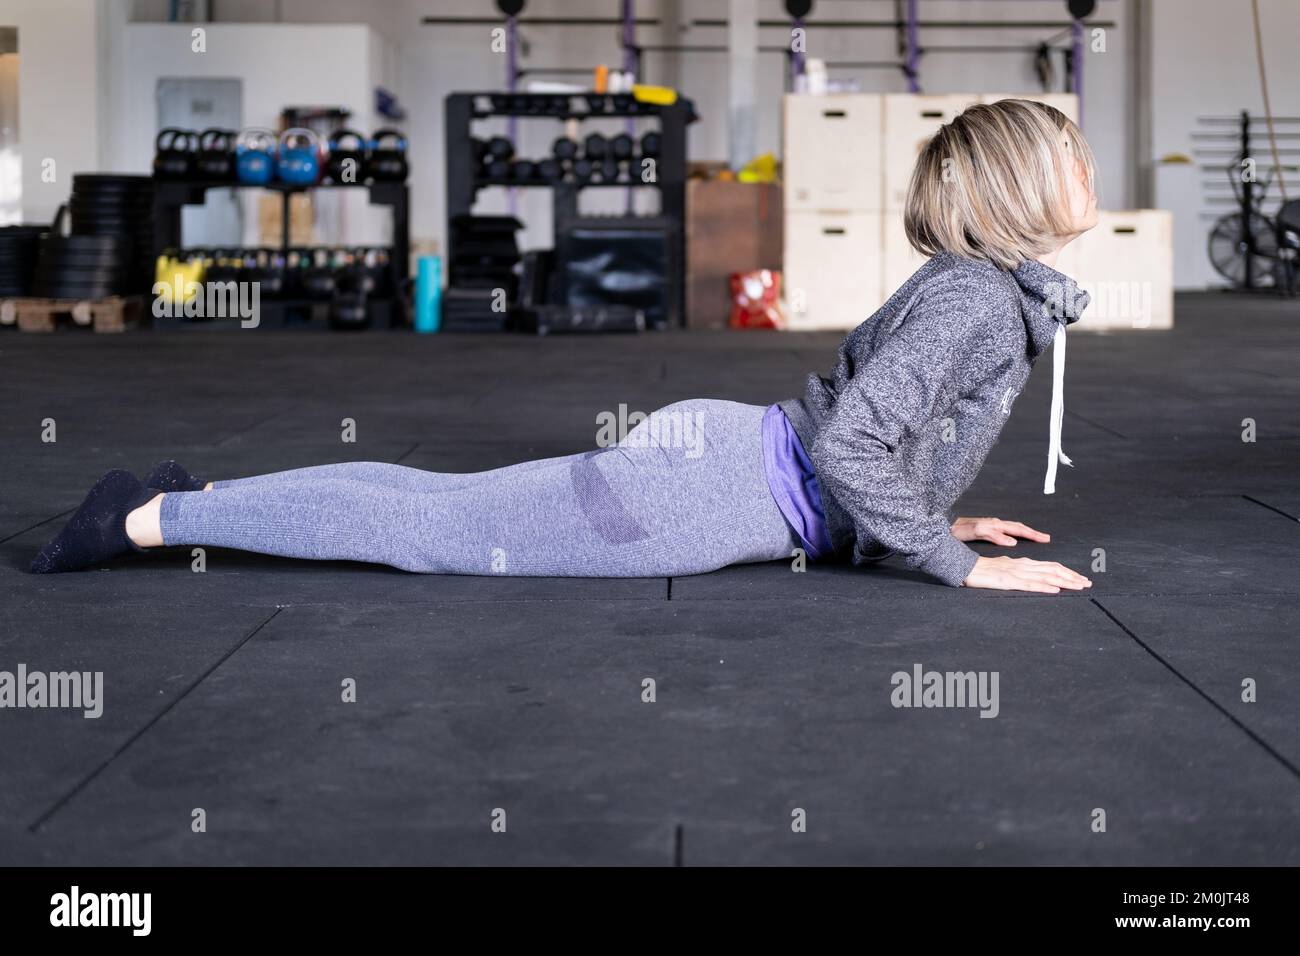 Eine blonde, mittelErwachsene Frau, die als Teil ihres Vinyasa-Flow-Yoga-Trainings allein eine nach oben gerichtete Hundehaltung einnimmt und Sportbekleidung im Fitnessstudio trägt. Stockfoto